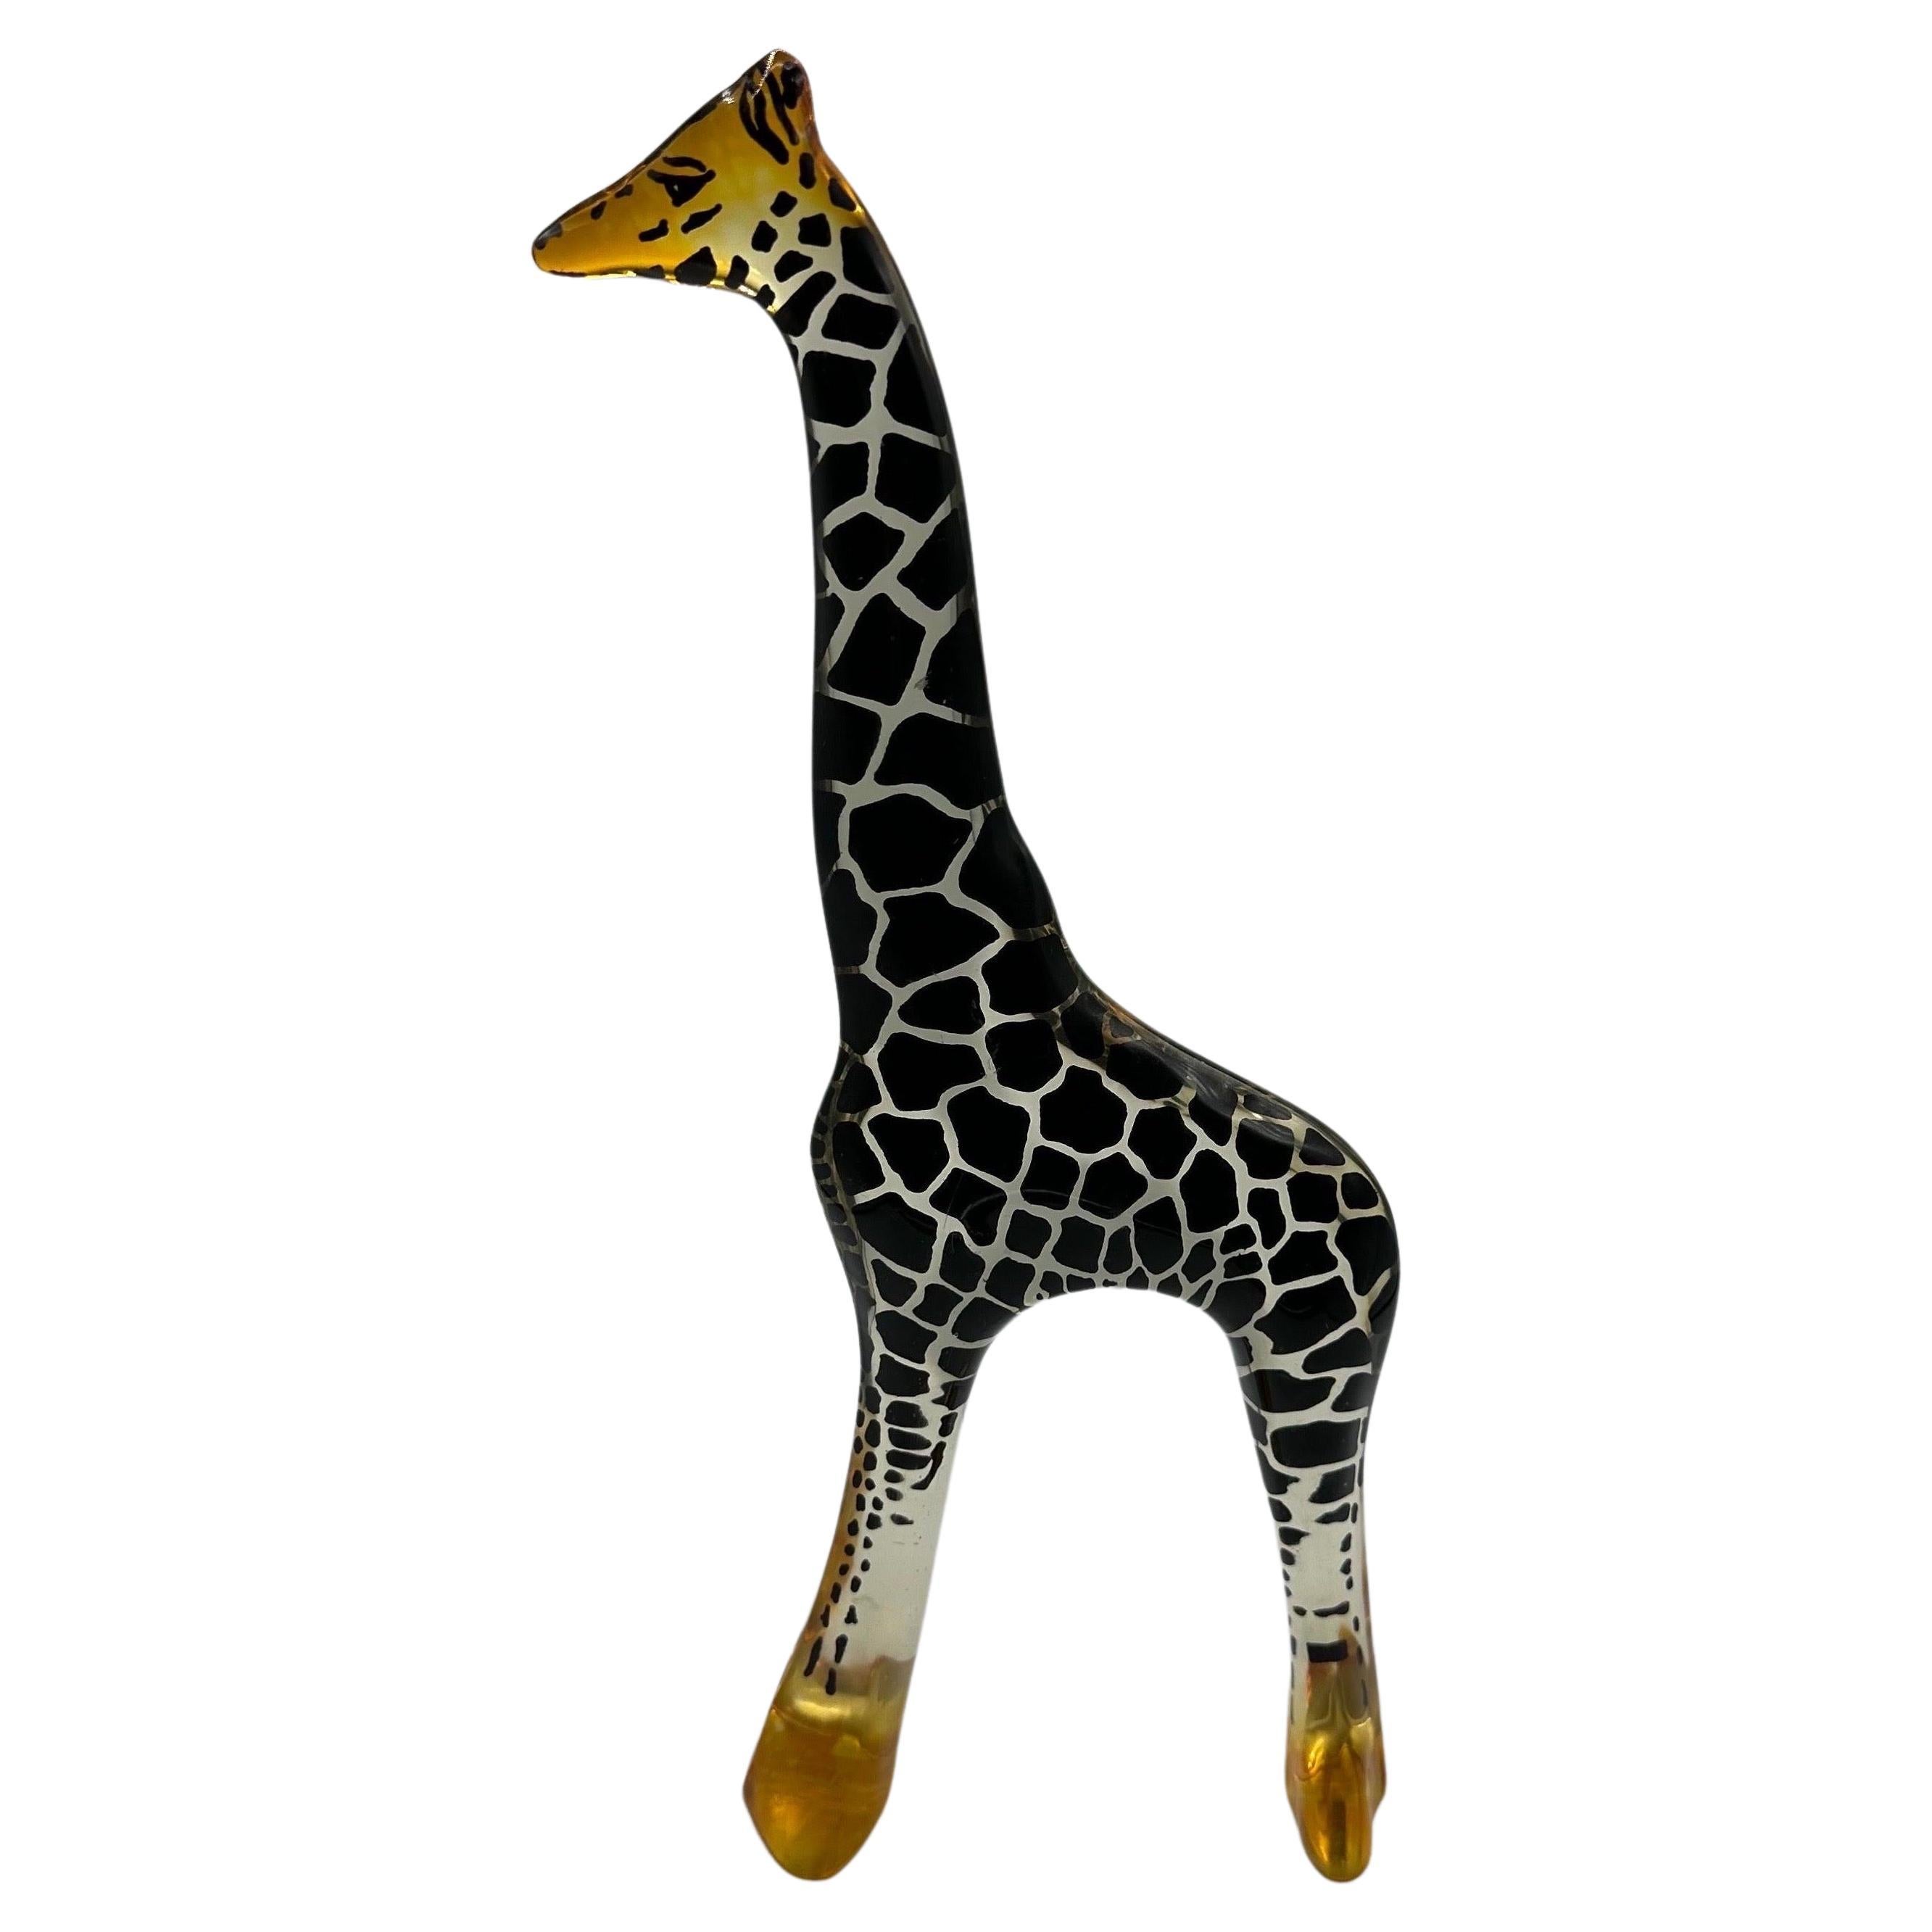 Grande figurine sculptée en acrylique de girafe Lucite Abraham Palatnik